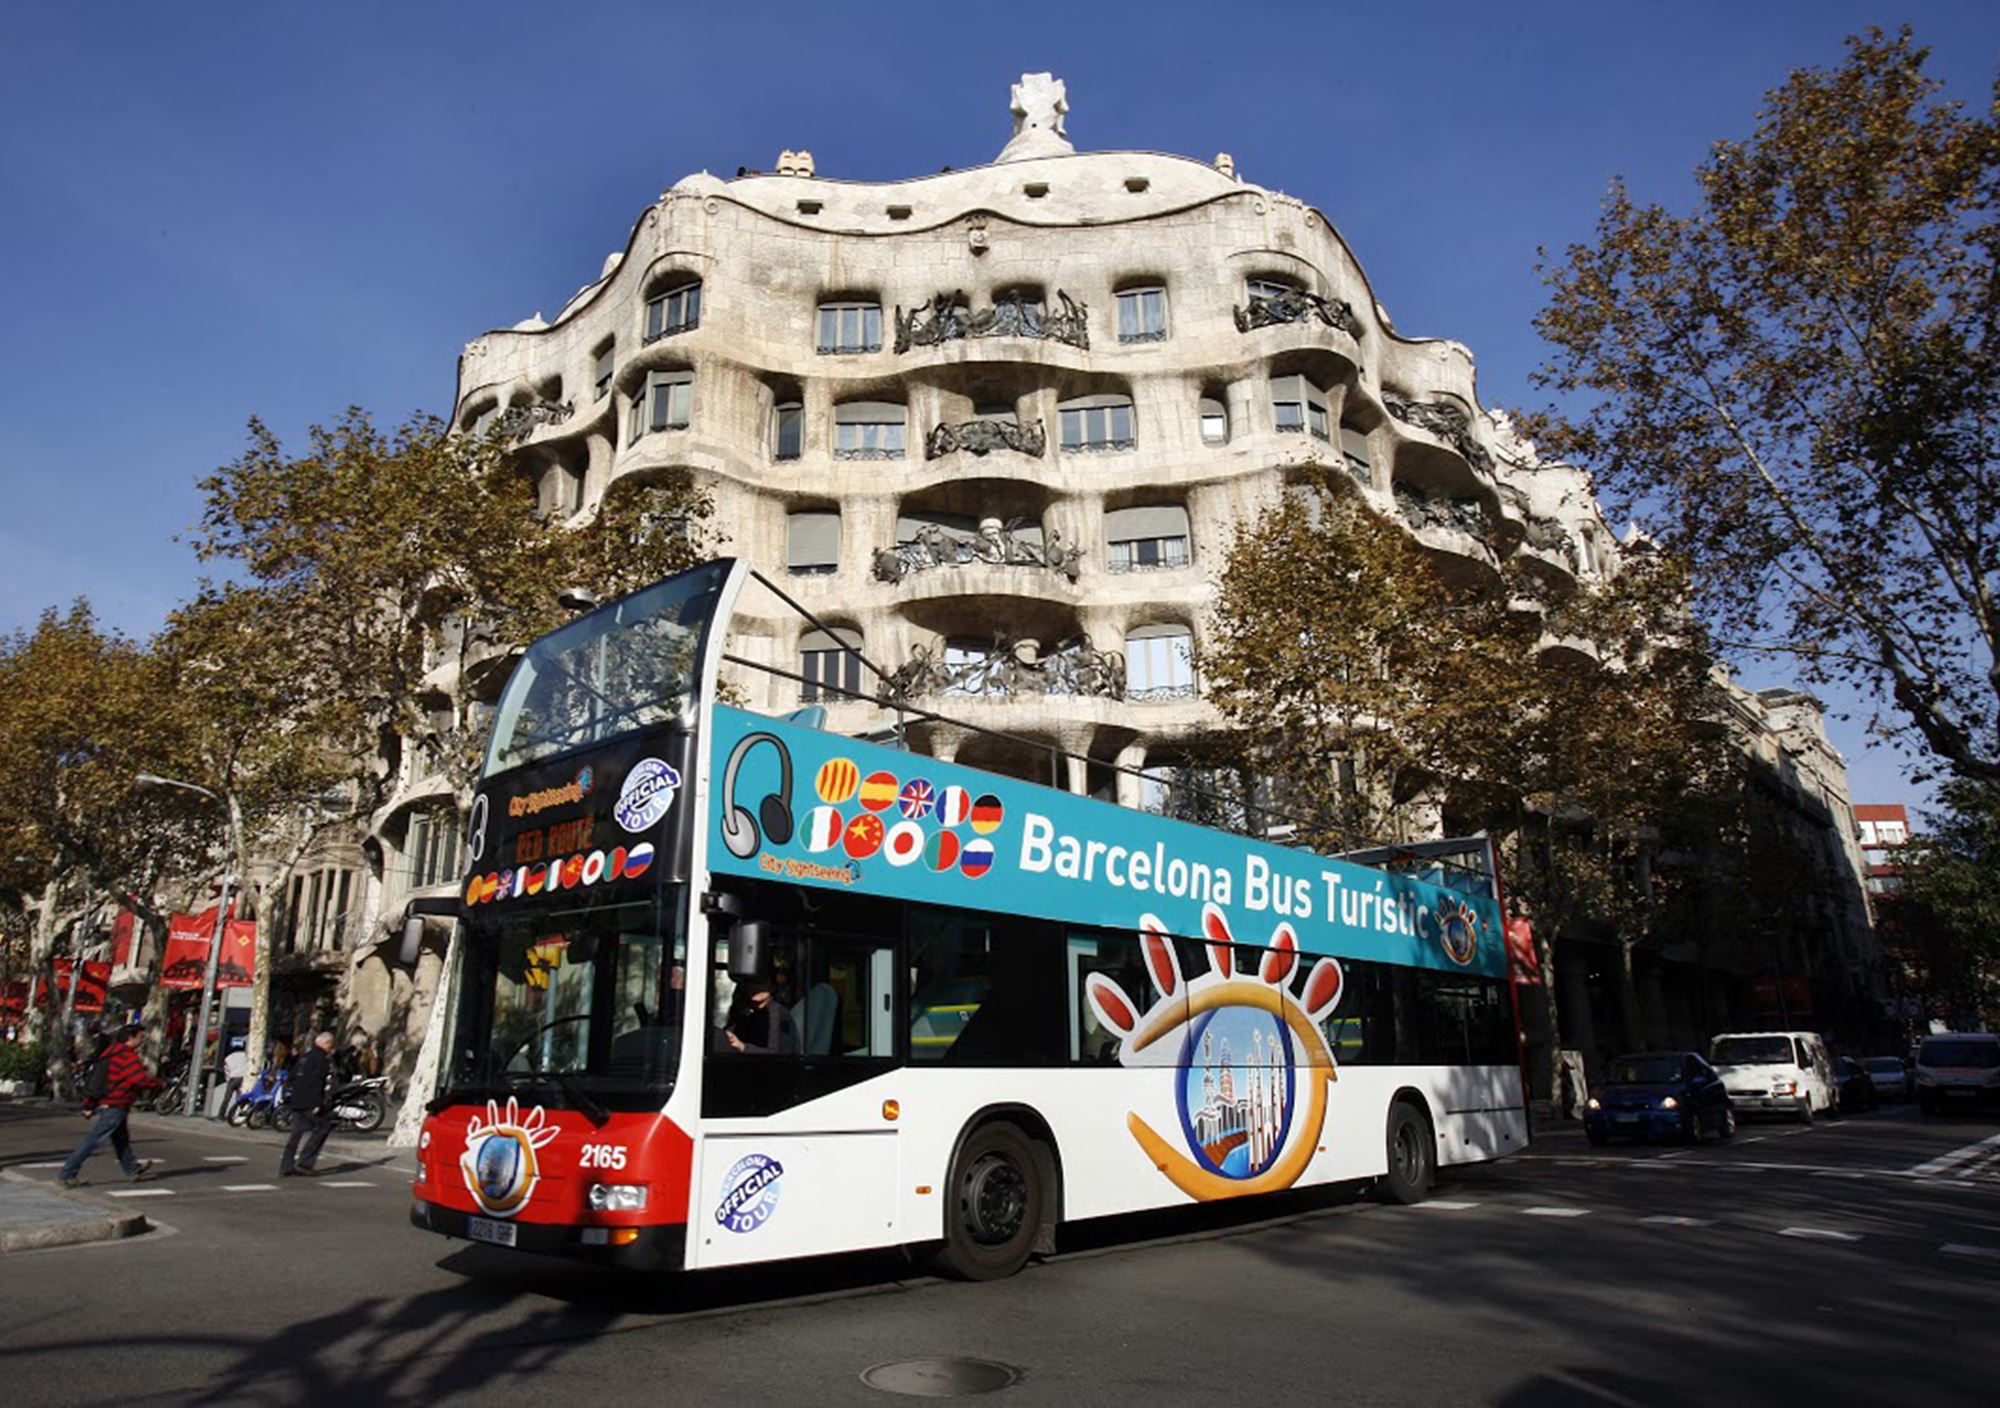 réservations réserver guidées tours Bus Touristique City Sightseeing Barcelone billets visiter